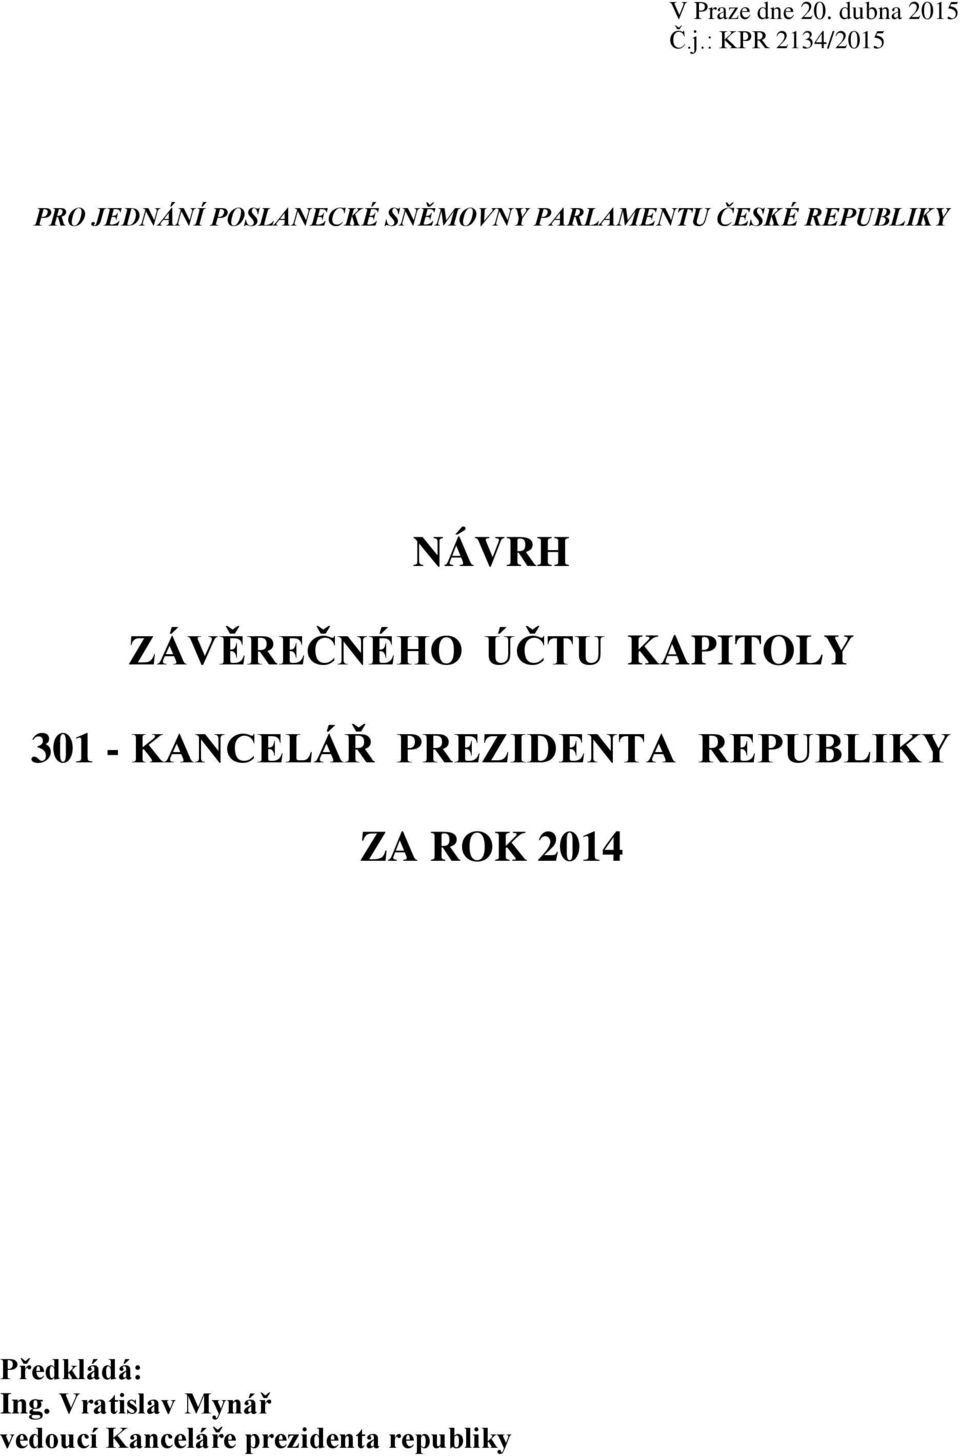 ČESKÉ REPUBLIKY NÁVRH ZÁVĚREČNÉHO ÚČTU KAPITOLY 301 - KANCELÁŘ